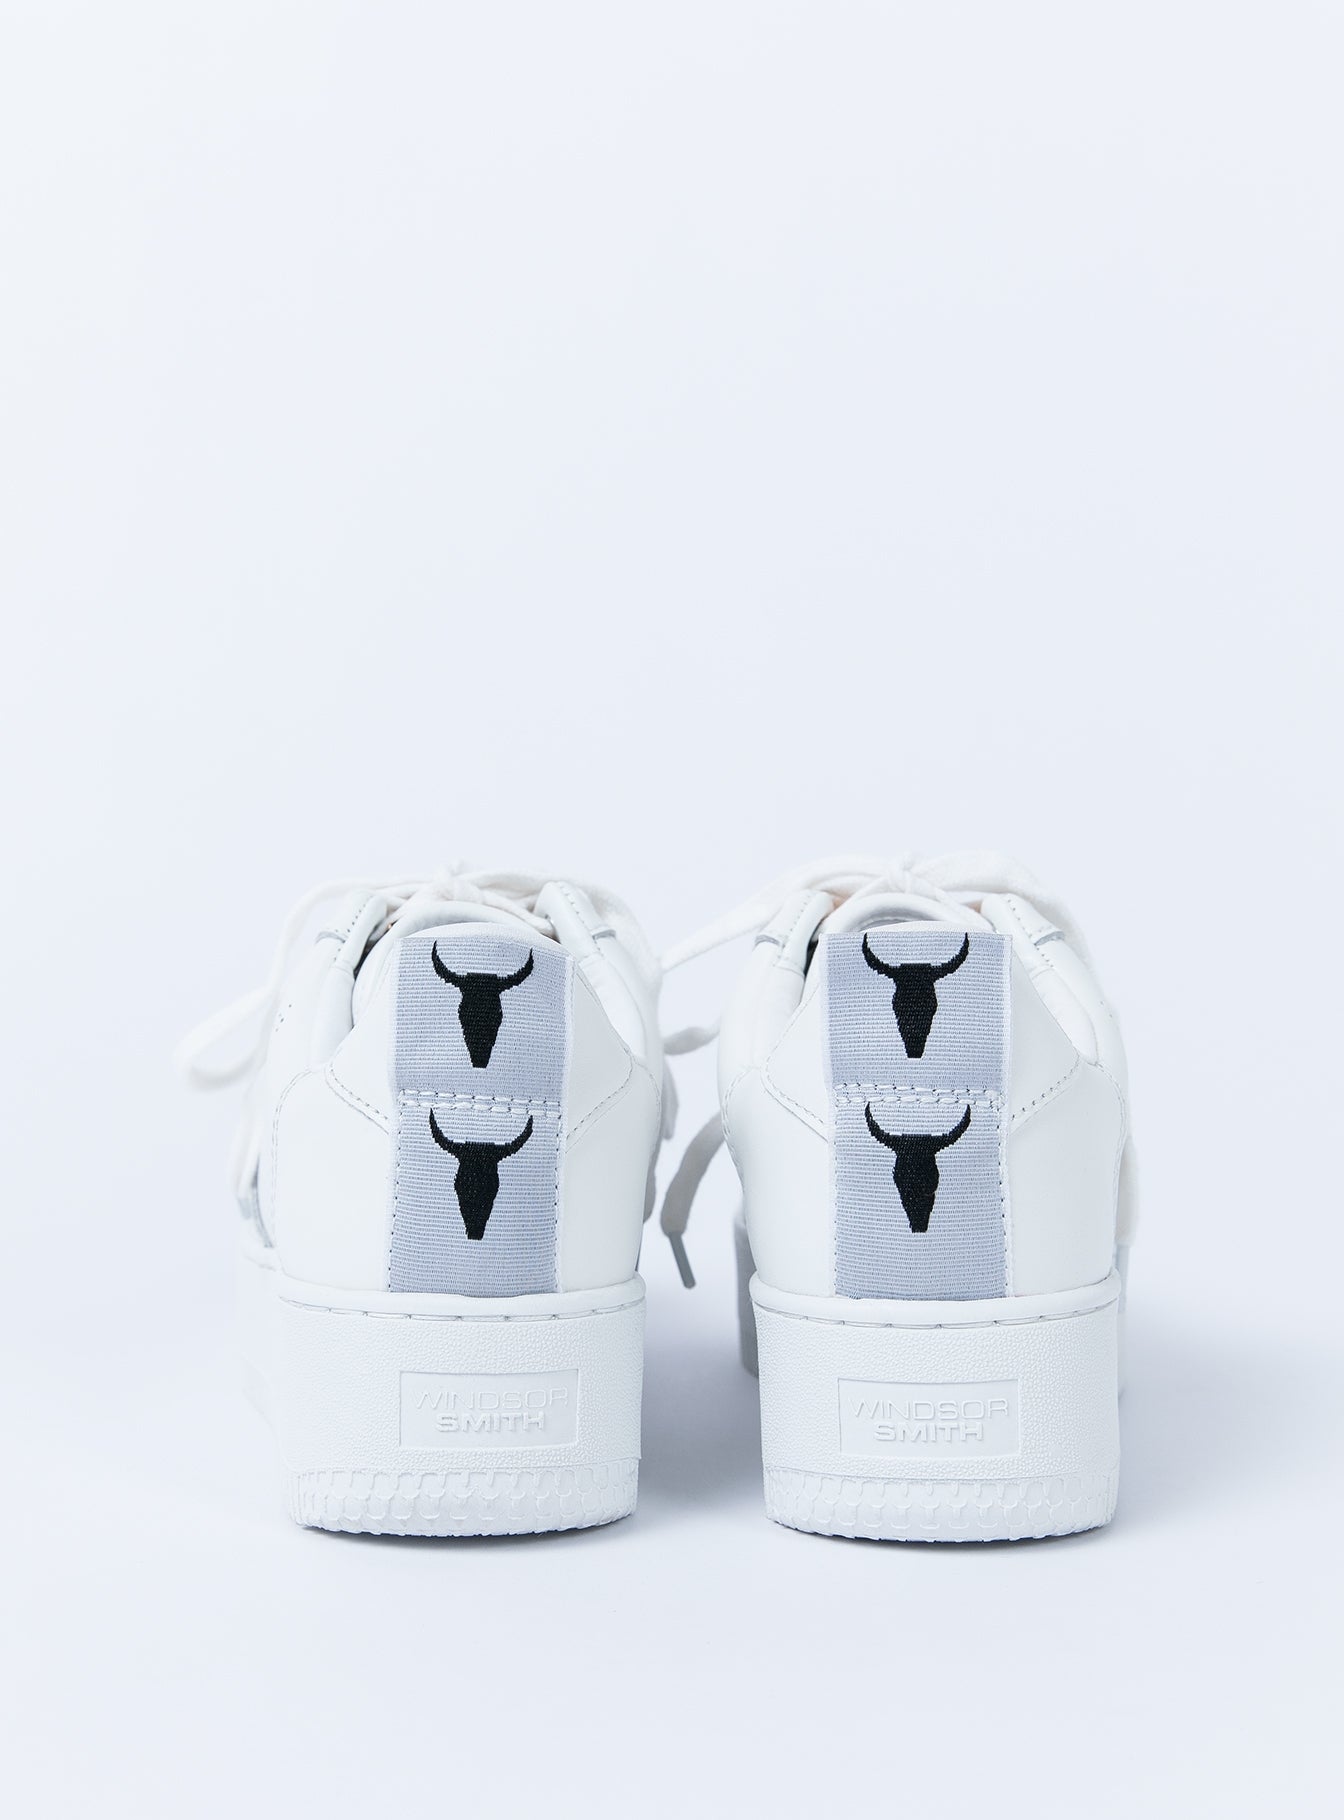 racerr white sneaker